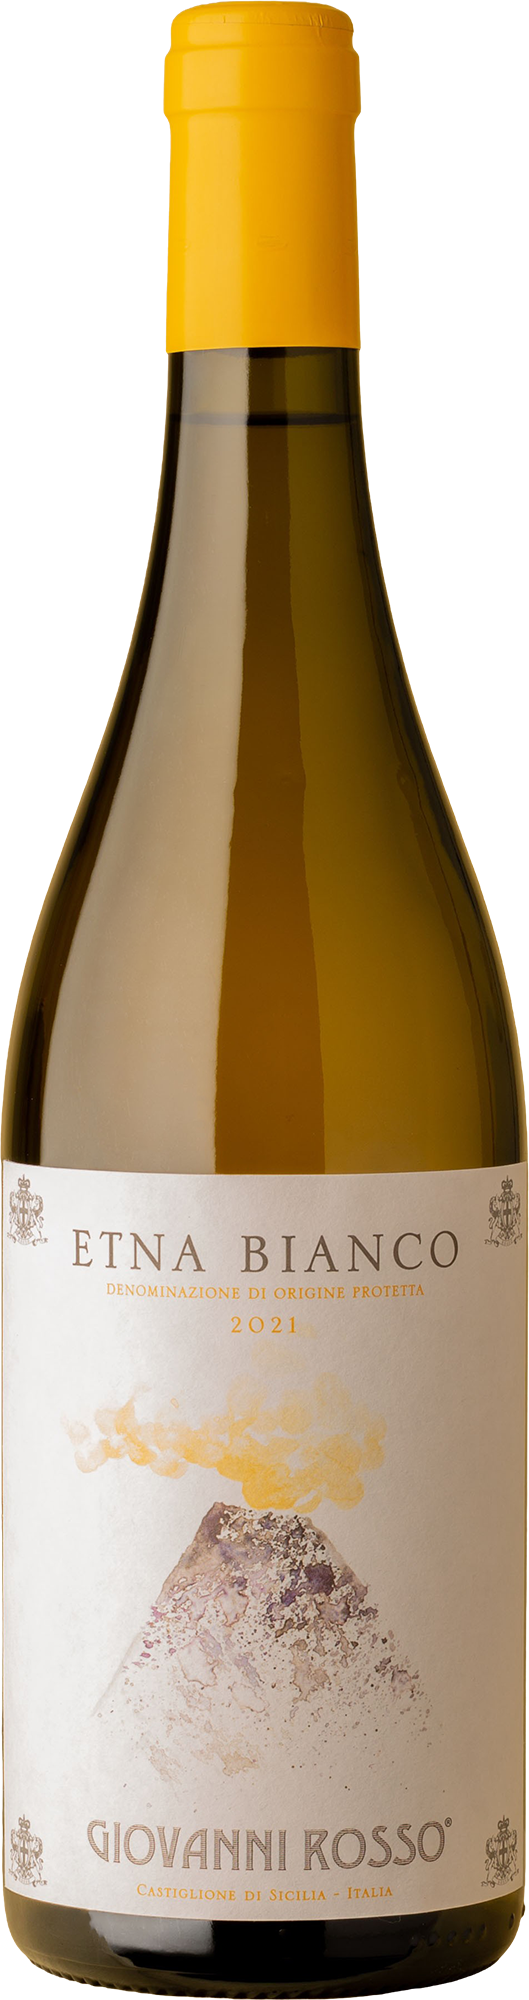 Giovanni Rosso - Etna Bianco Carricante 2021 White Wine